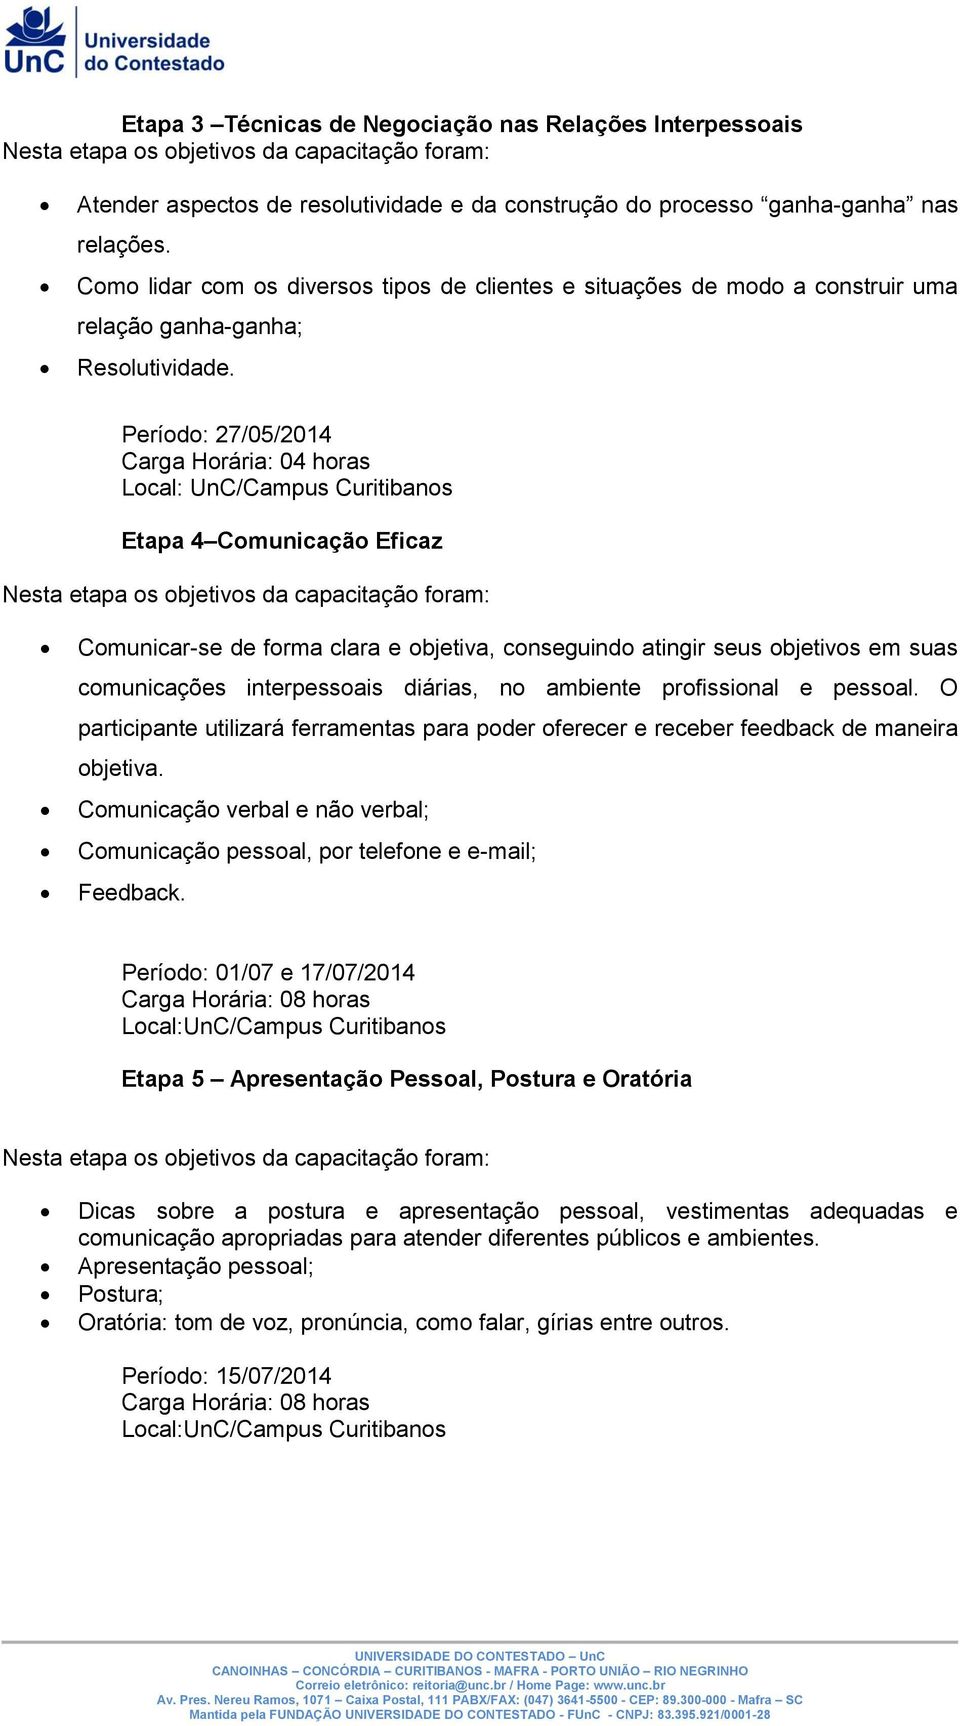 Período: 27/05/2014 Local: UnC/Campus Curitibanos Etapa 4 Comunicação Eficaz Comunicar-se de forma clara e objetiva, conseguindo atingir seus objetivos em suas comunicações interpessoais diárias, no